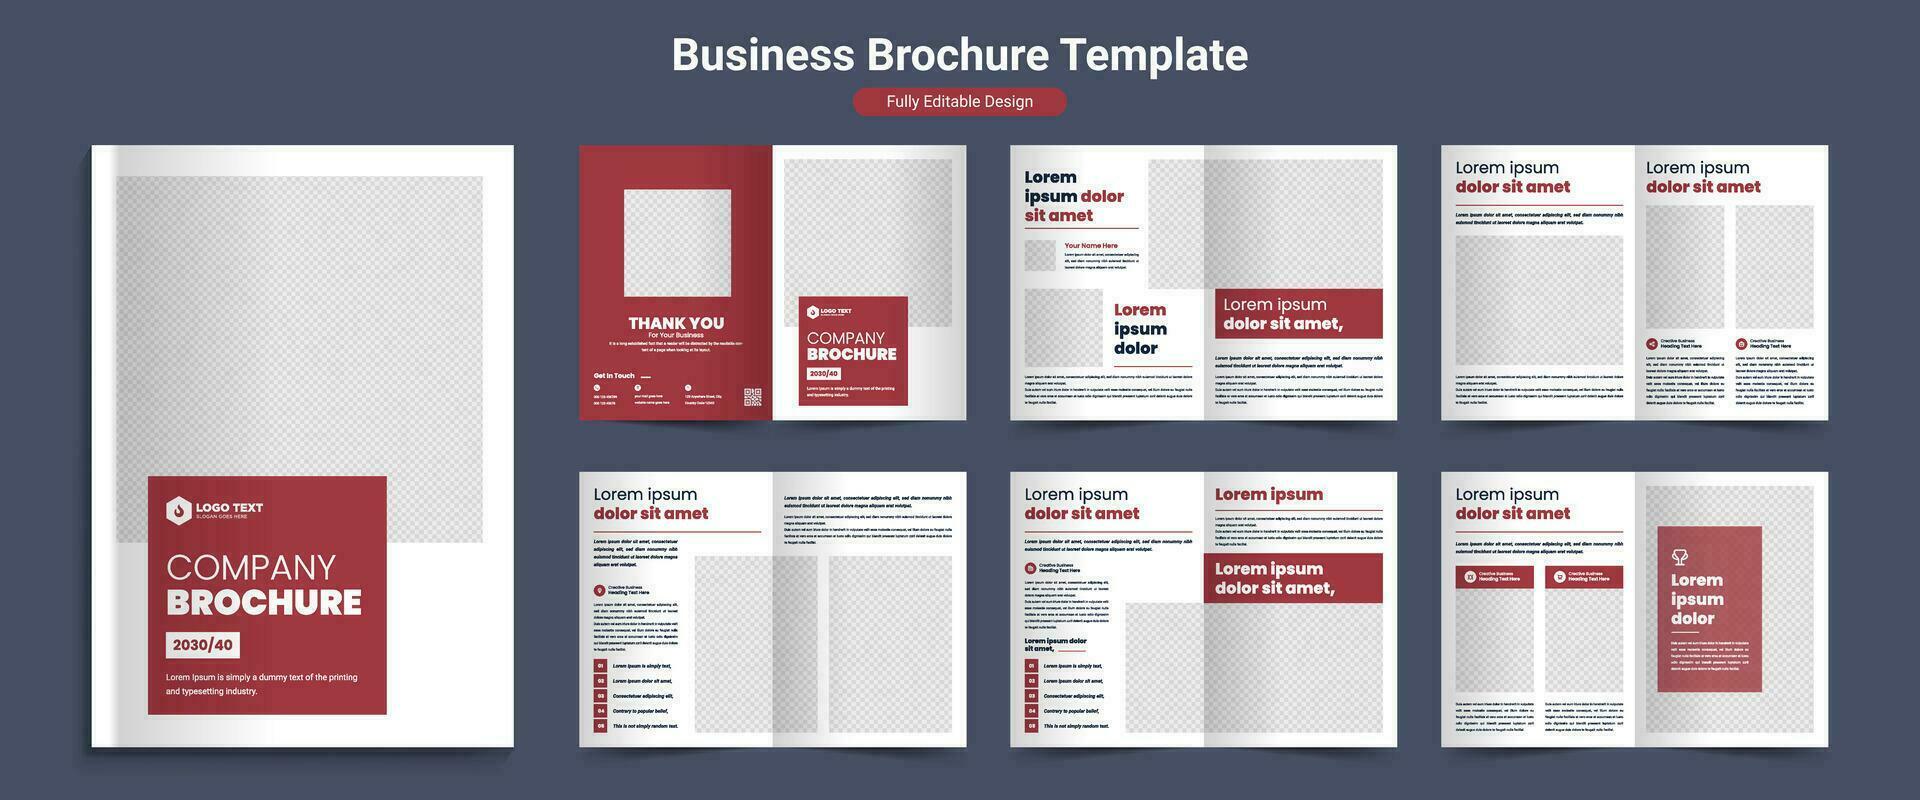 kreativ korporativ Geschäft Zeitschrift, Vorschlag, und Produkt Katalog Profil Broschüre Layout Vorlage Design vektor